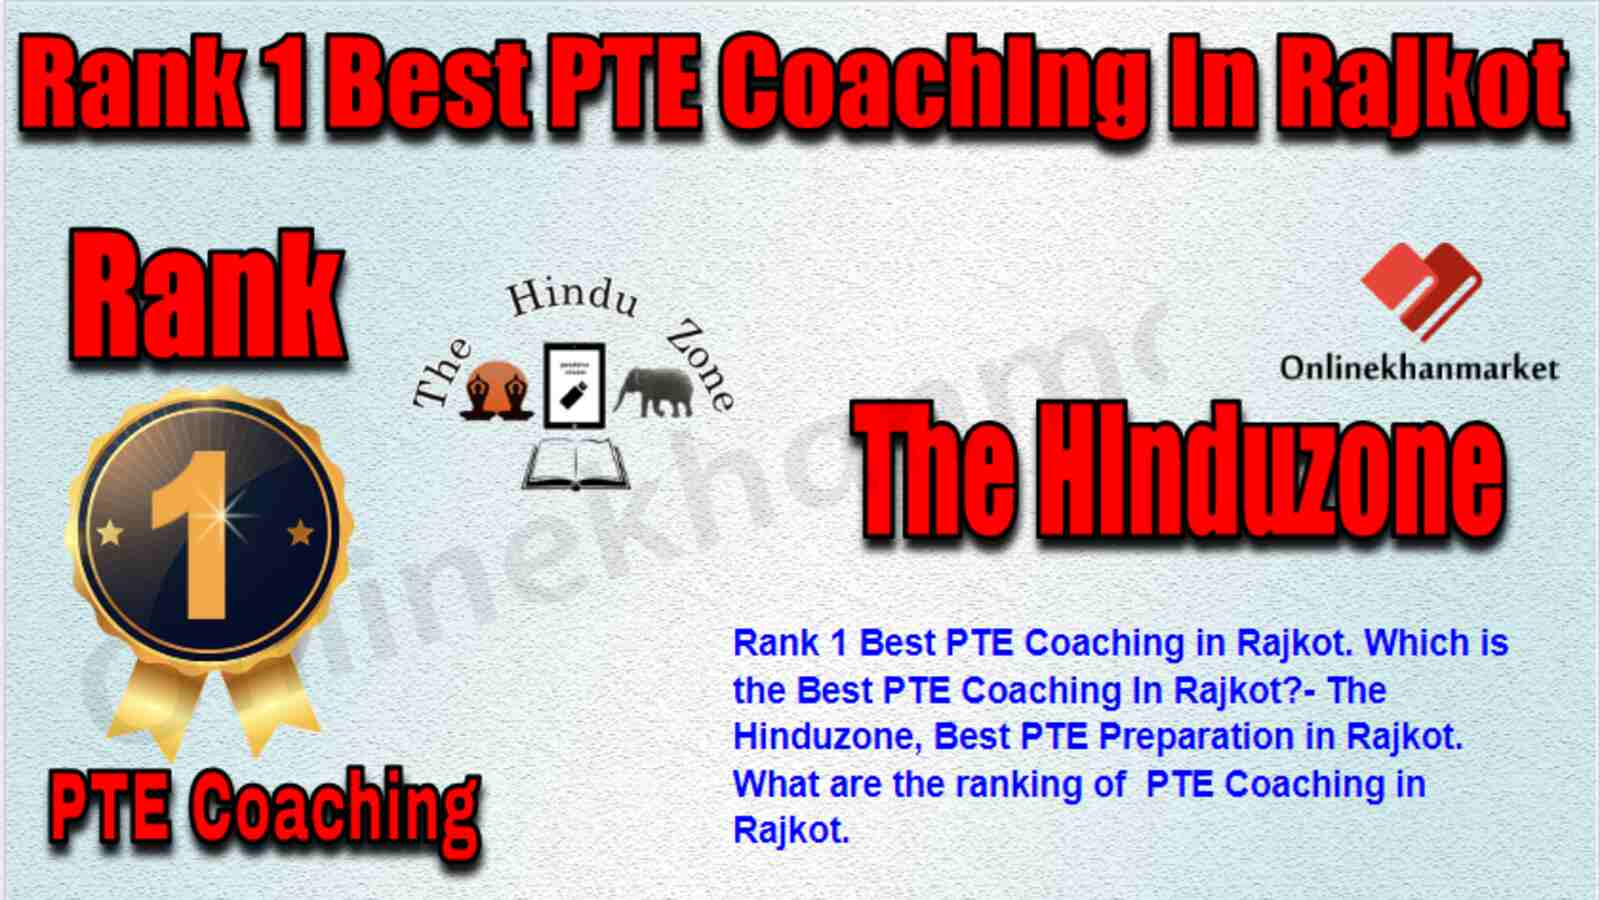 Rank 1 Best PTE Coaching in Rajkot